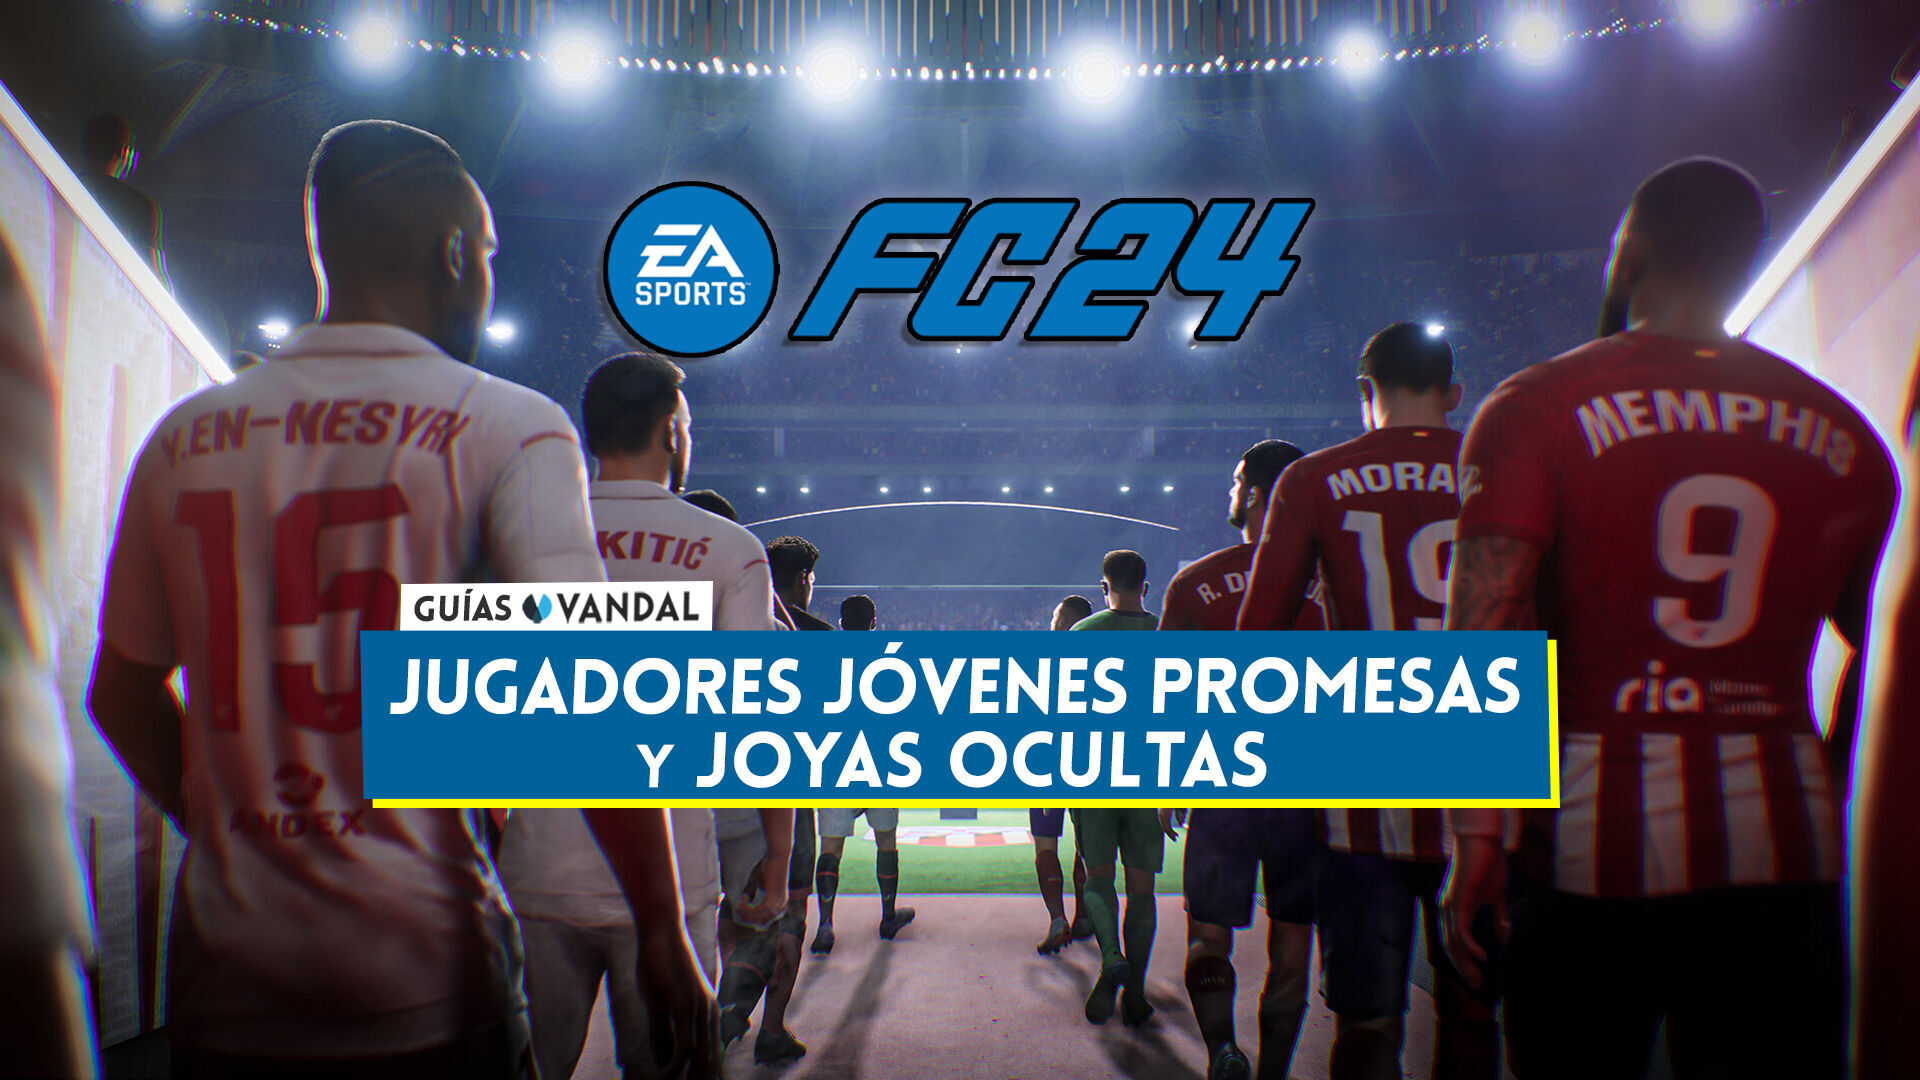 FIFA 23: Joyas ocultas y jóvenes promesas en el modo Carrera